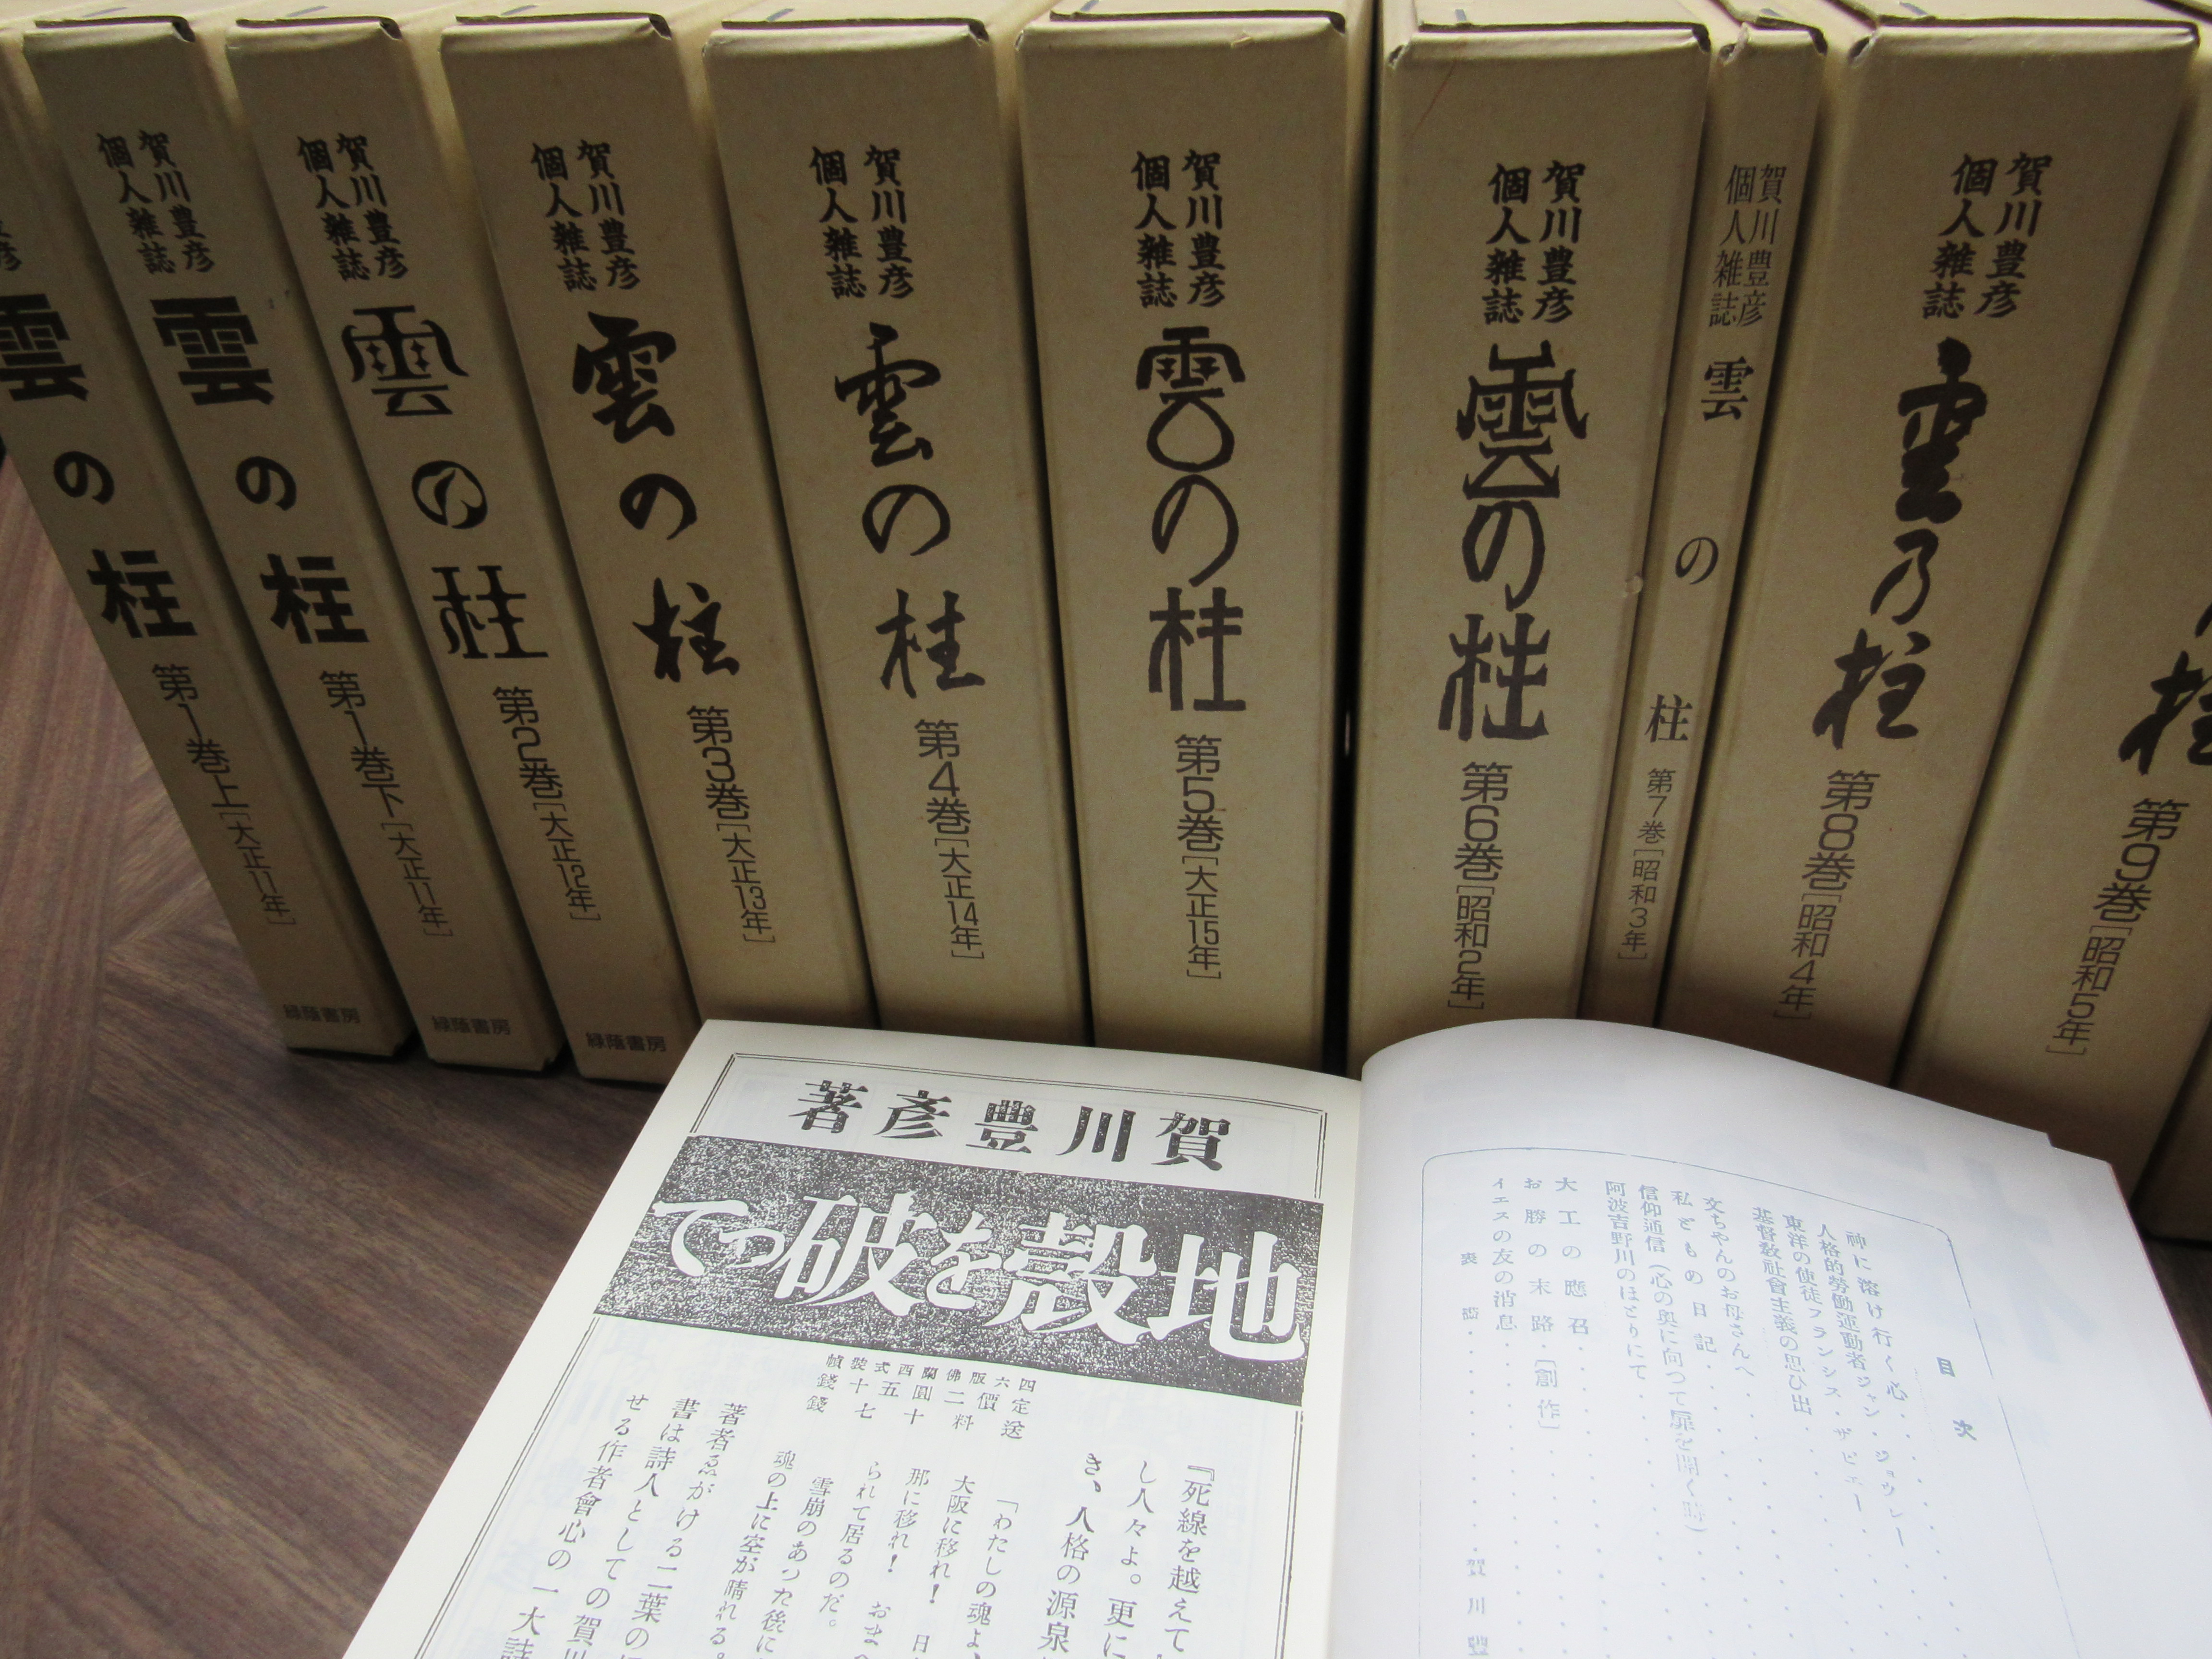 『雲の柱』は賀川豊彦が1922（大正11）年1月に創刊した雑誌で、賀川の思想を伝えてきた。賀川の妻ハルも寄稿している